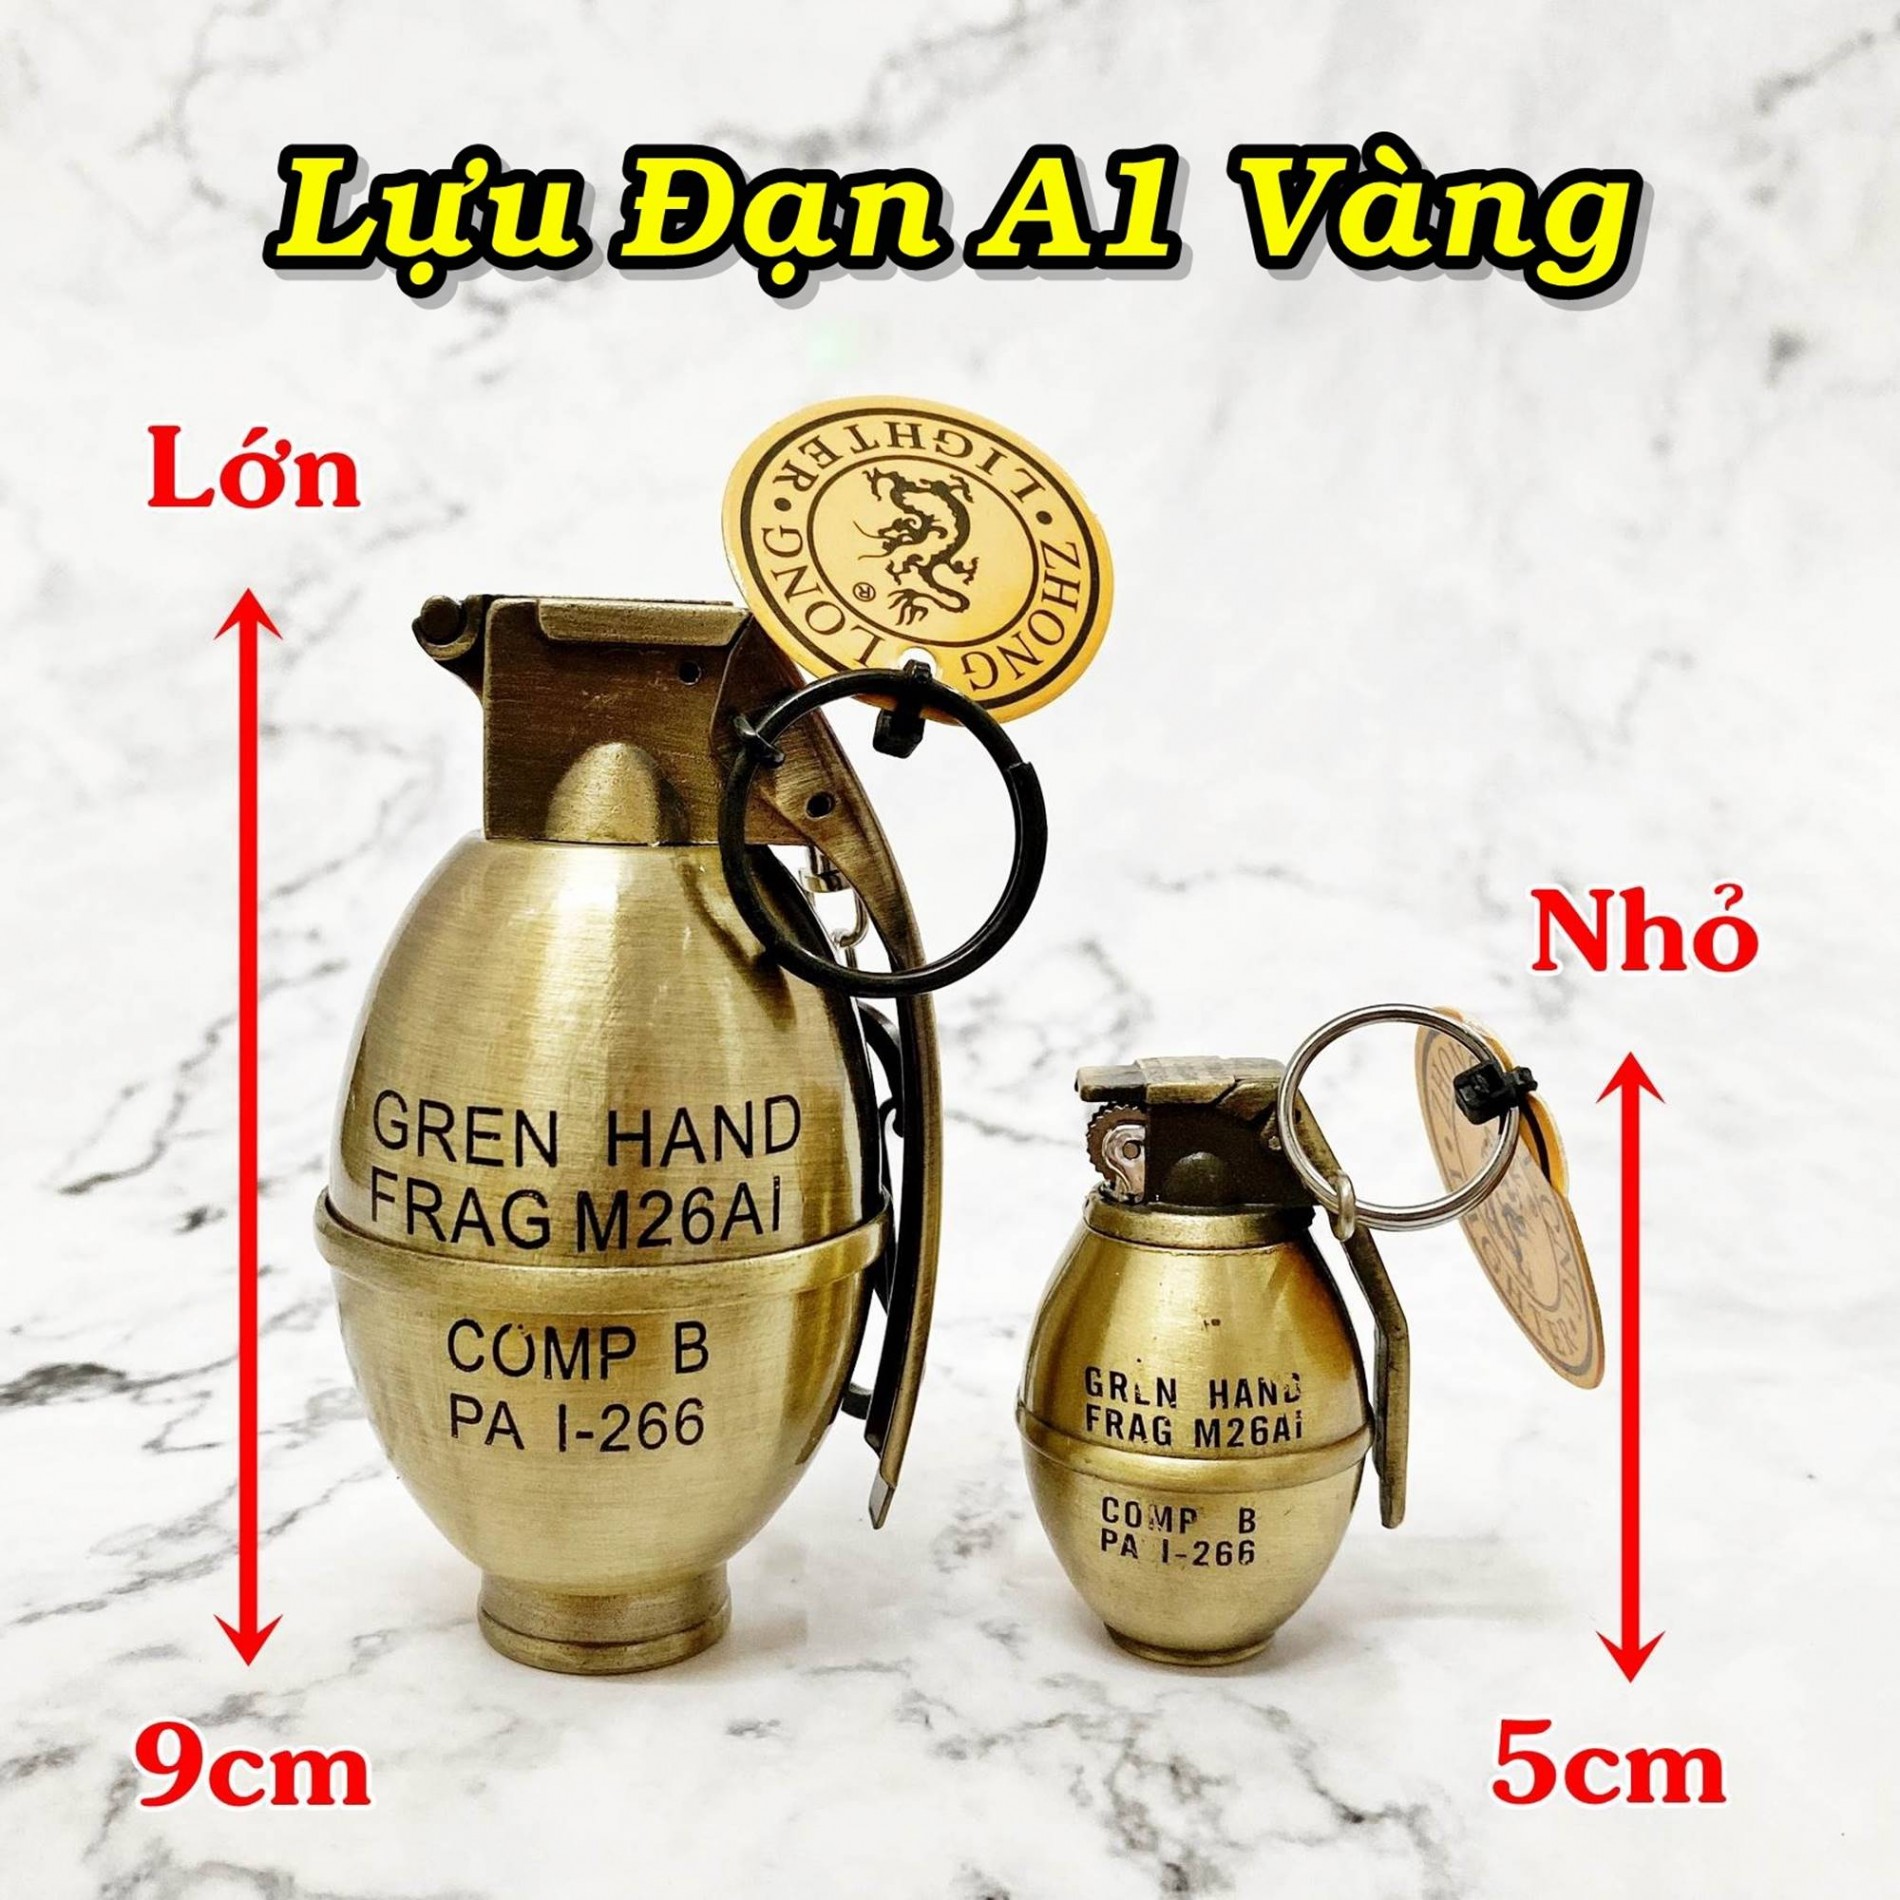 luu_dan_a1_vang_nho_3